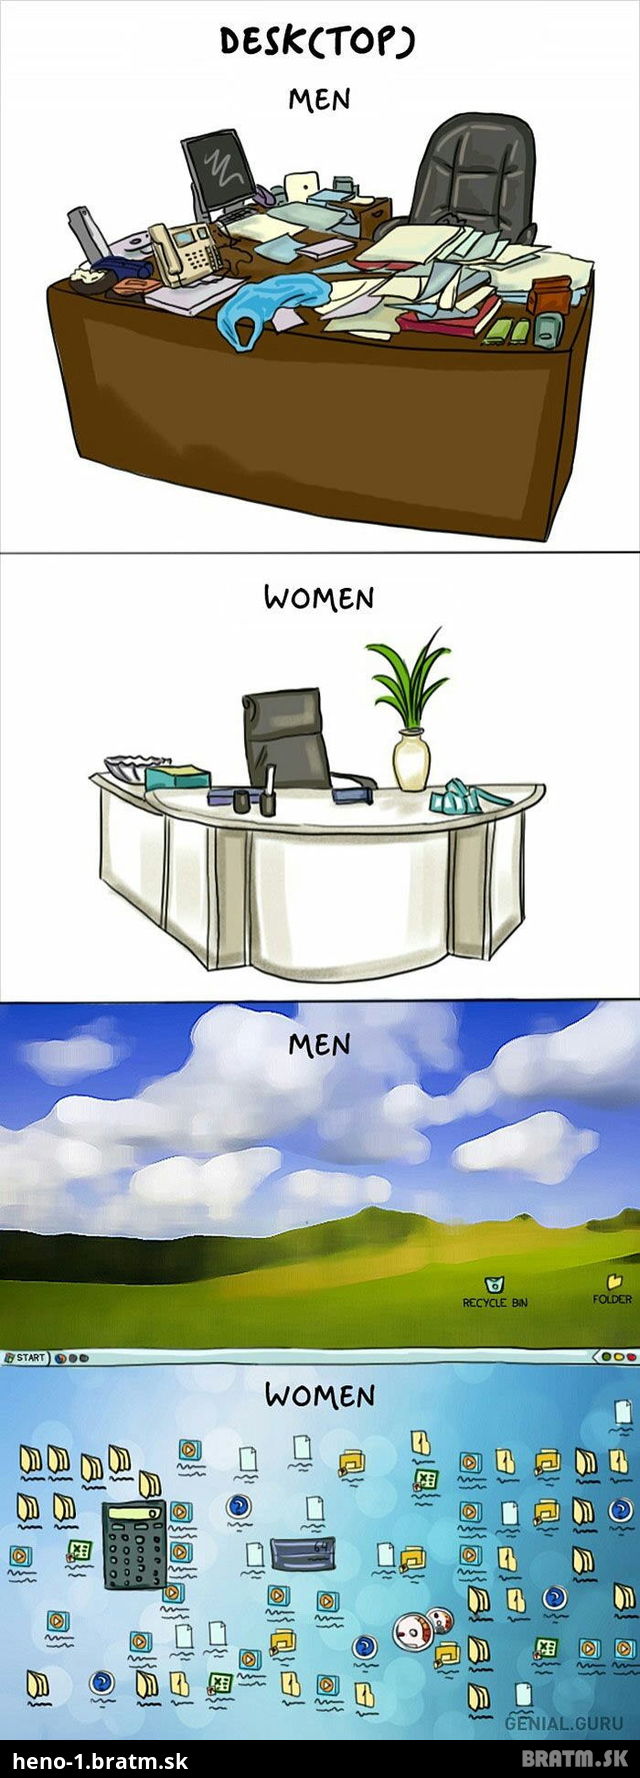 Rozdiel medzi ženami a mužmi :D